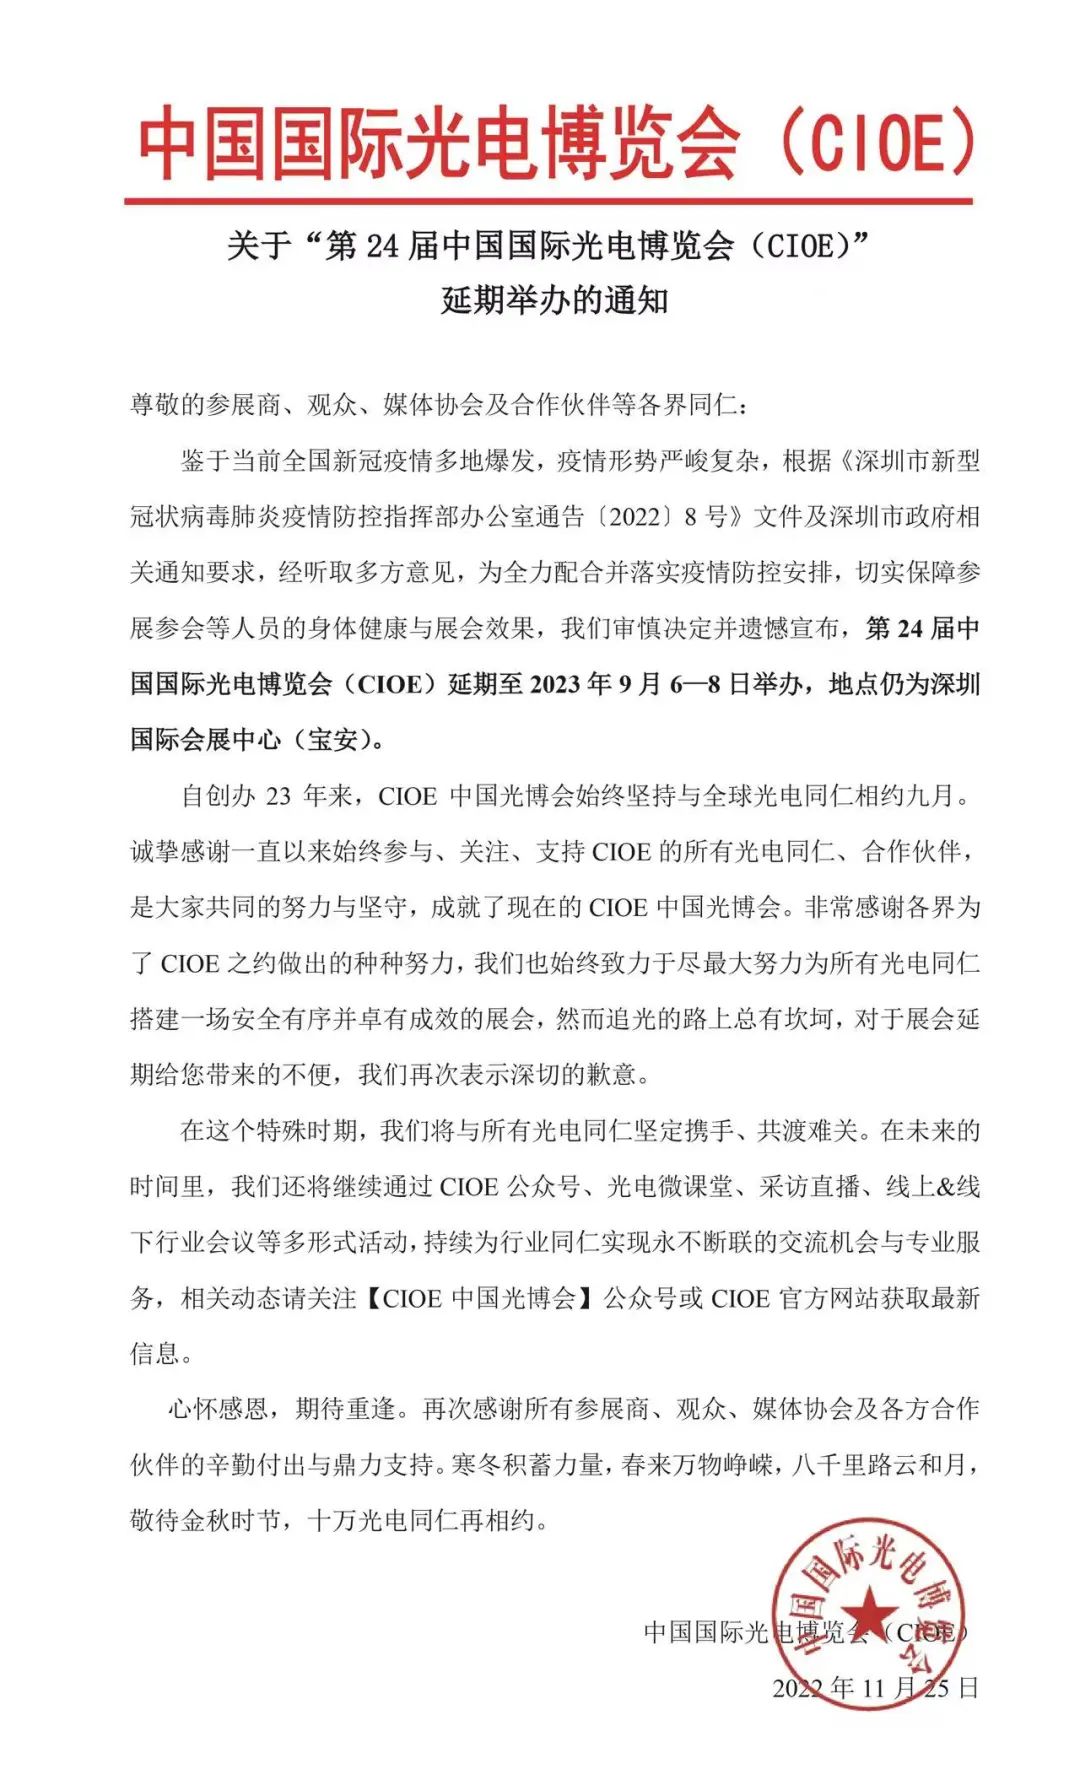 【延期通知】关于“第24届中国国际光电博览会(CIOE)”延期举办的通知